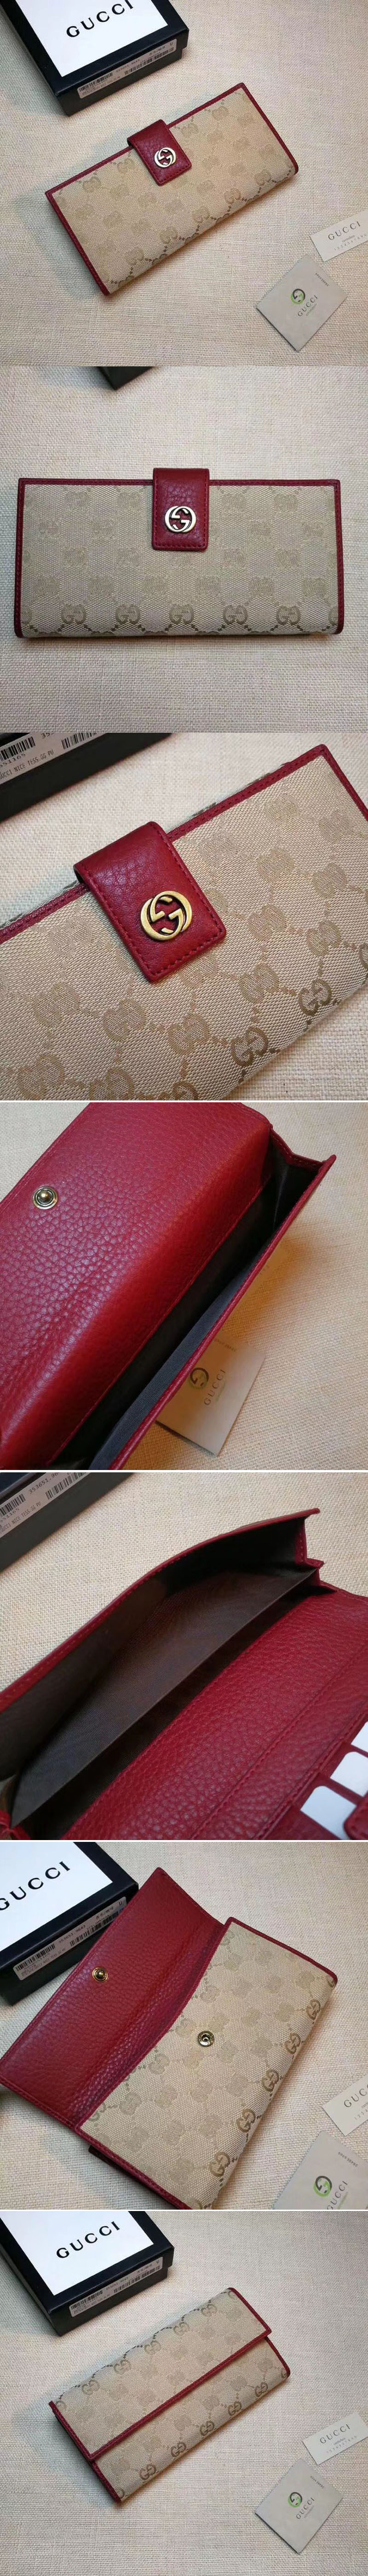 Replica Gucci 337335 GG Supreme Wallet Red